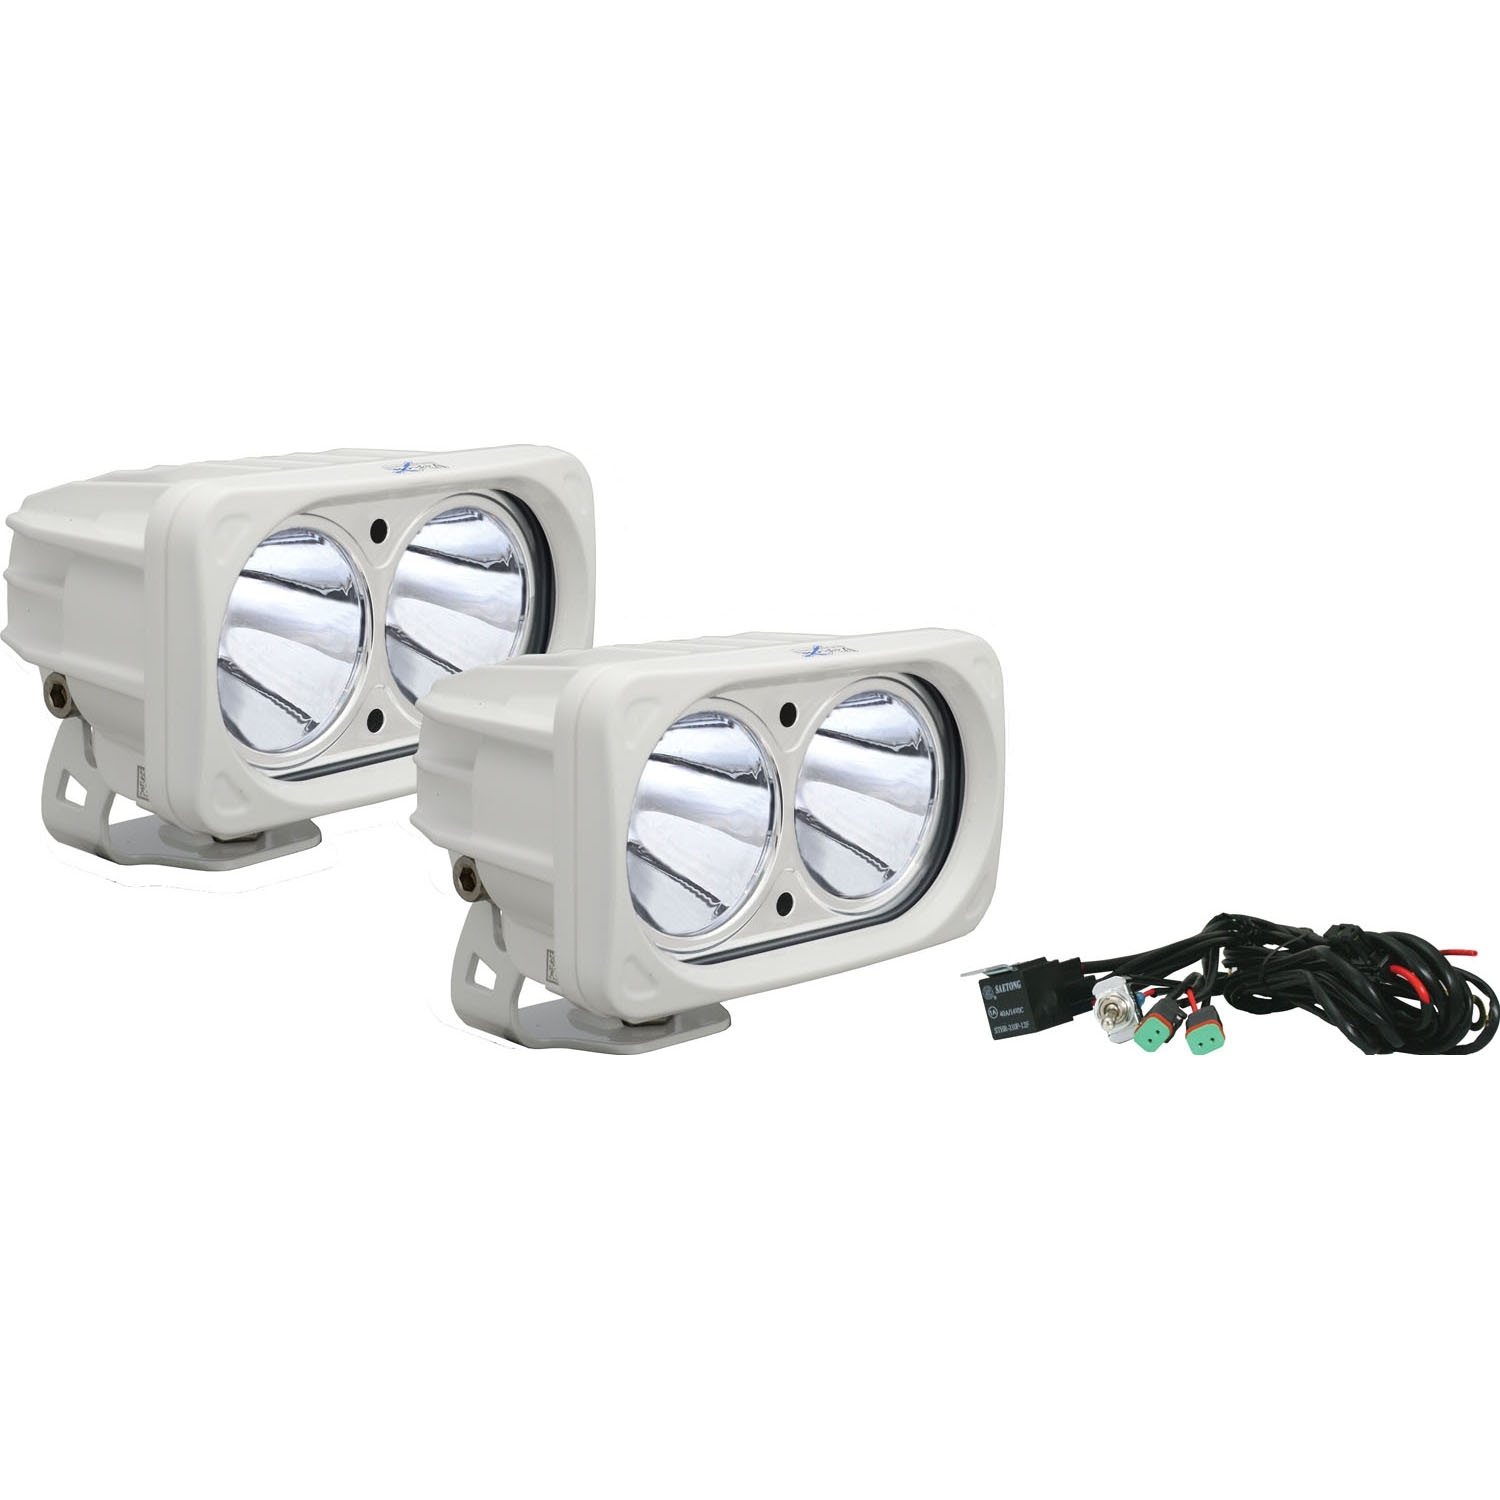 Vision X Optimus Square Led Light Kit, White (2) 10W Led's, 10 Degree Narrow Beam (Pair),